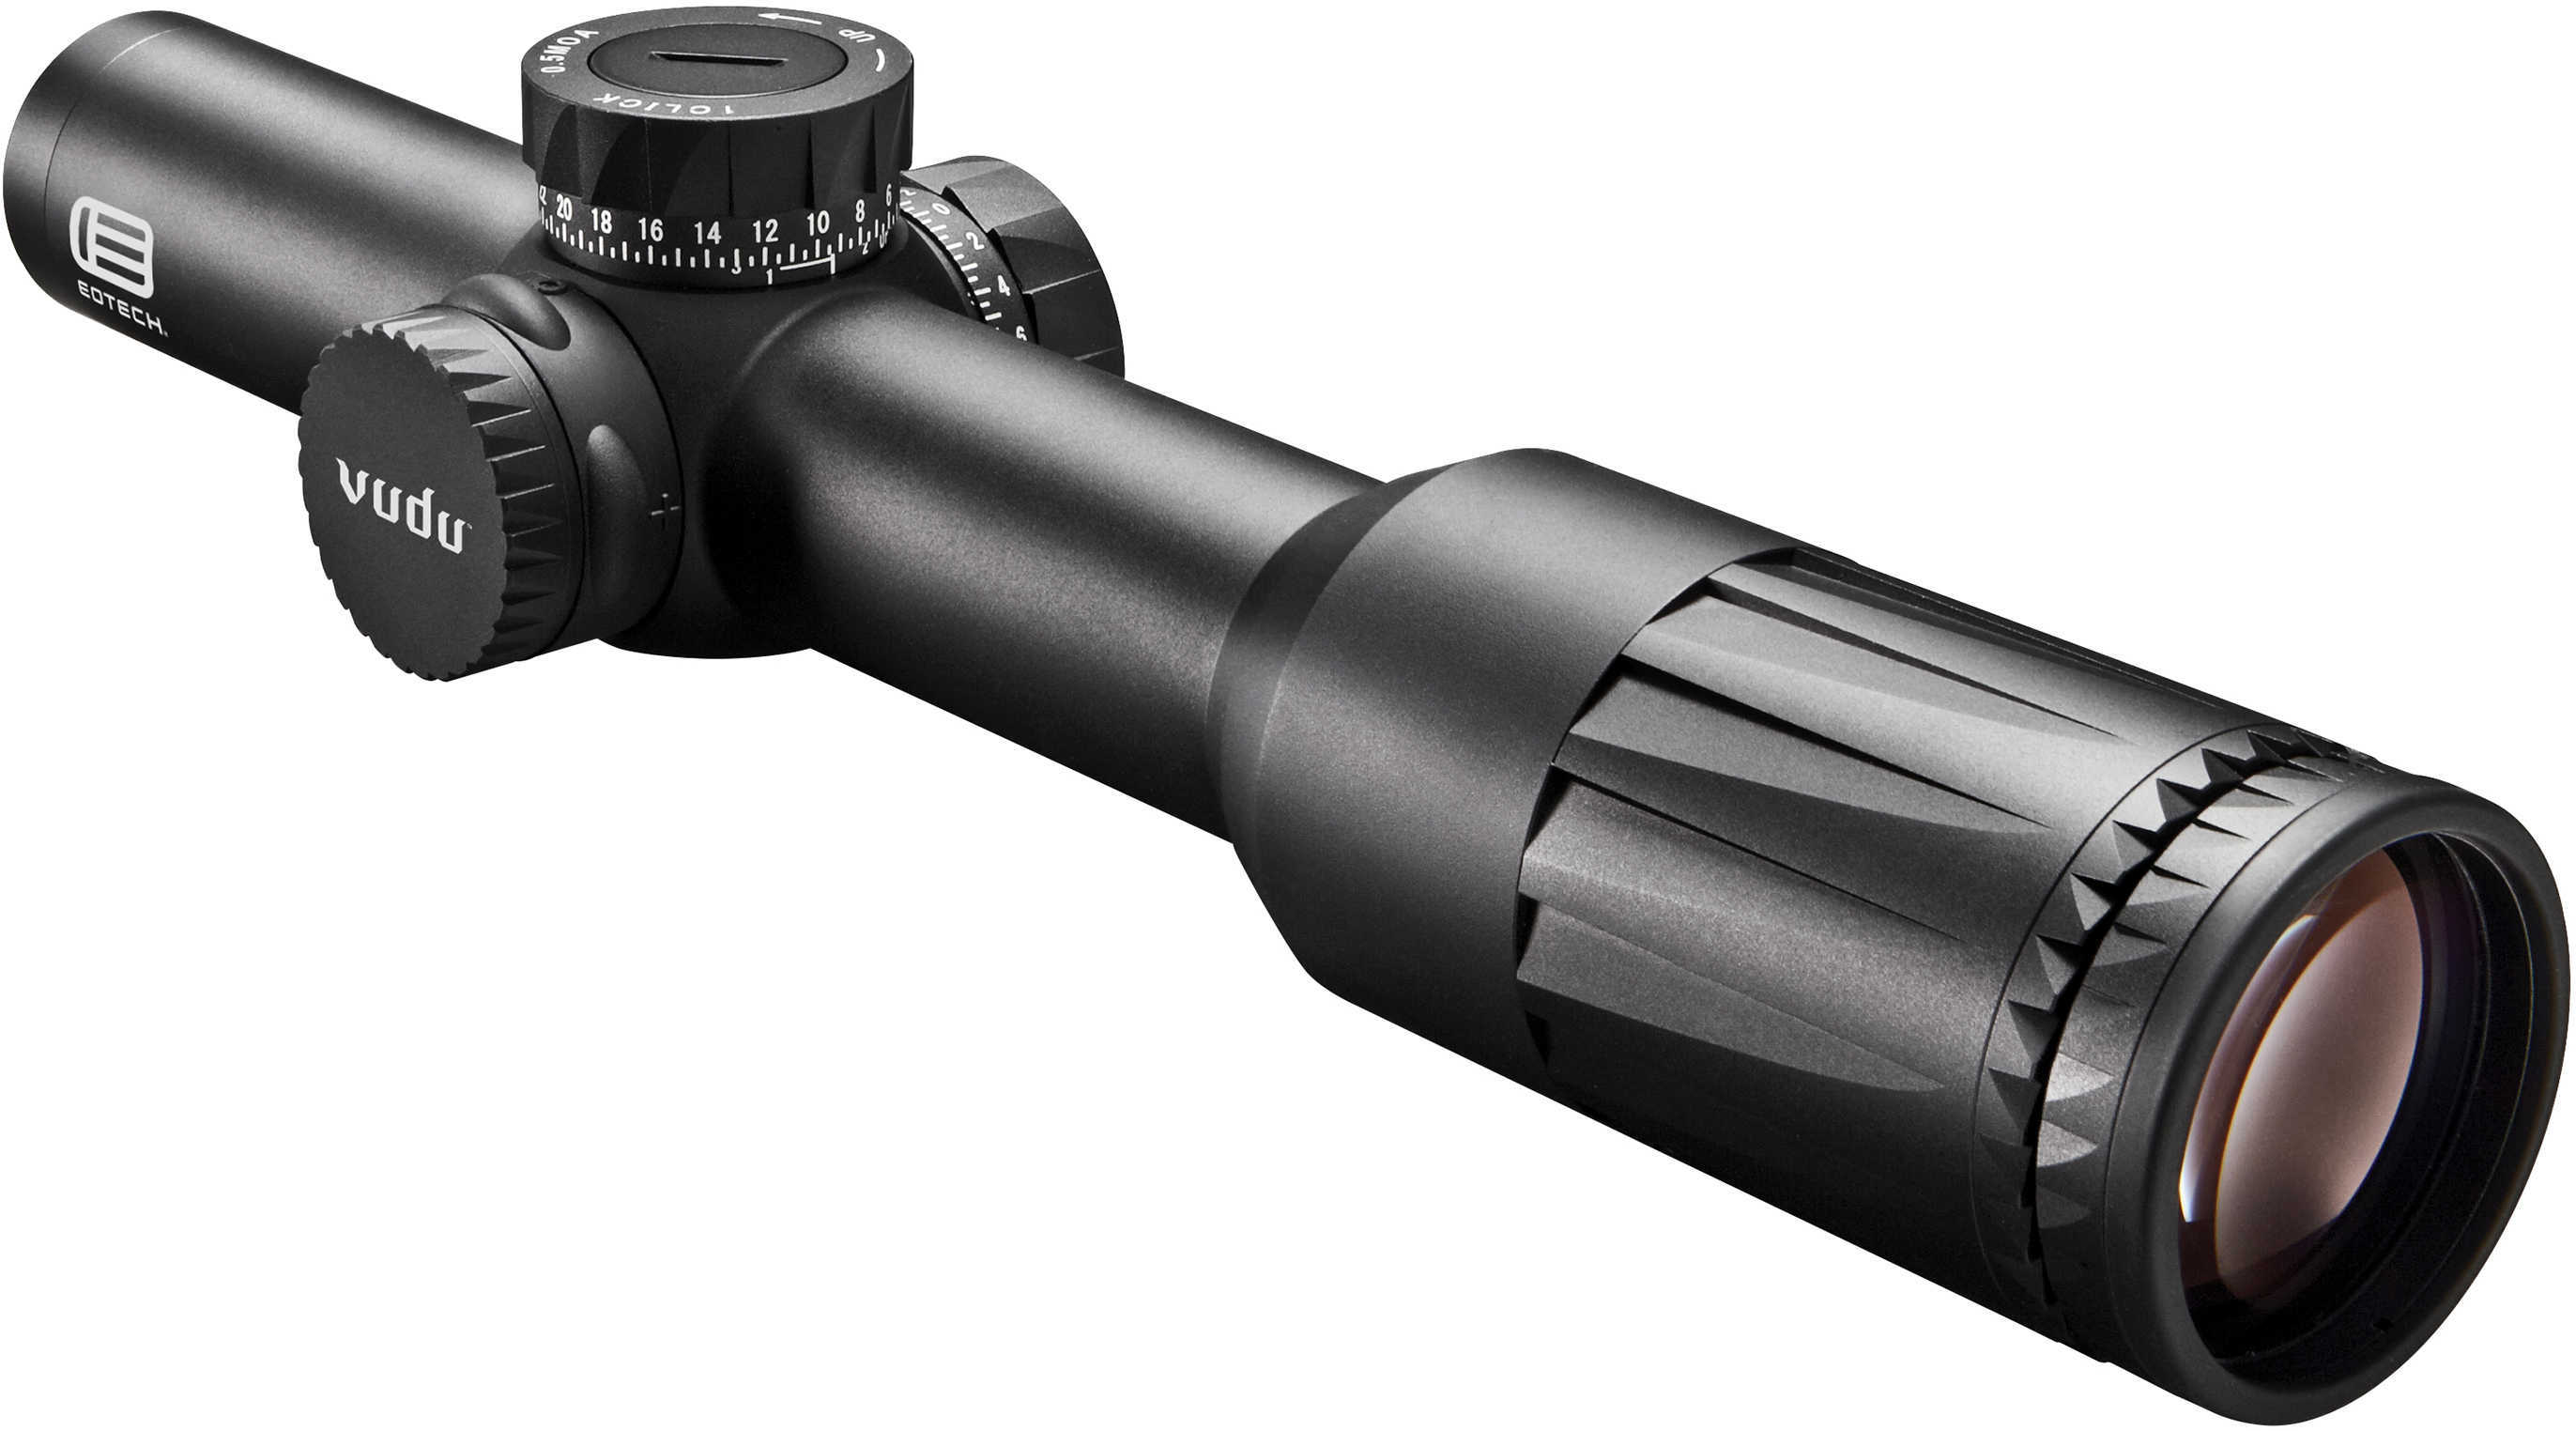 EOTech Vudu 1-6X24 FFP Riflescope - SR1 Reticle (MRAD) 30mm